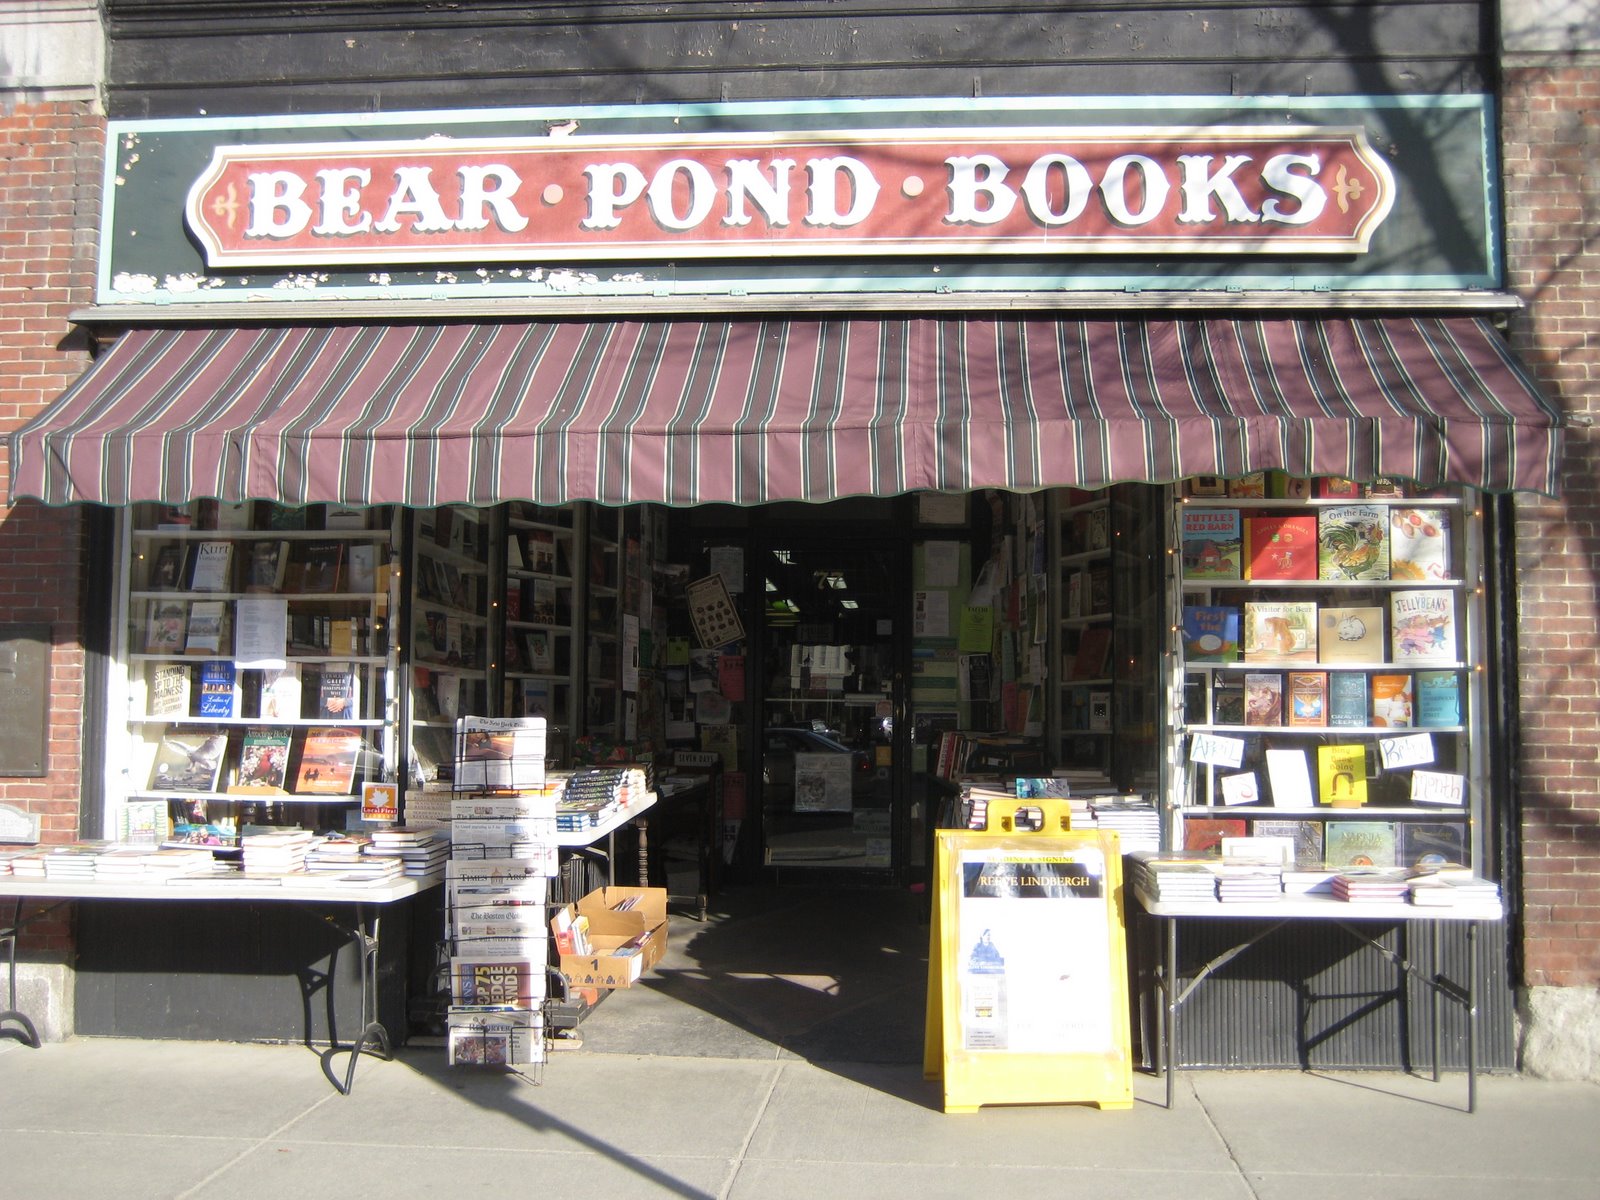 [Bear+Pond+Books.JPG]